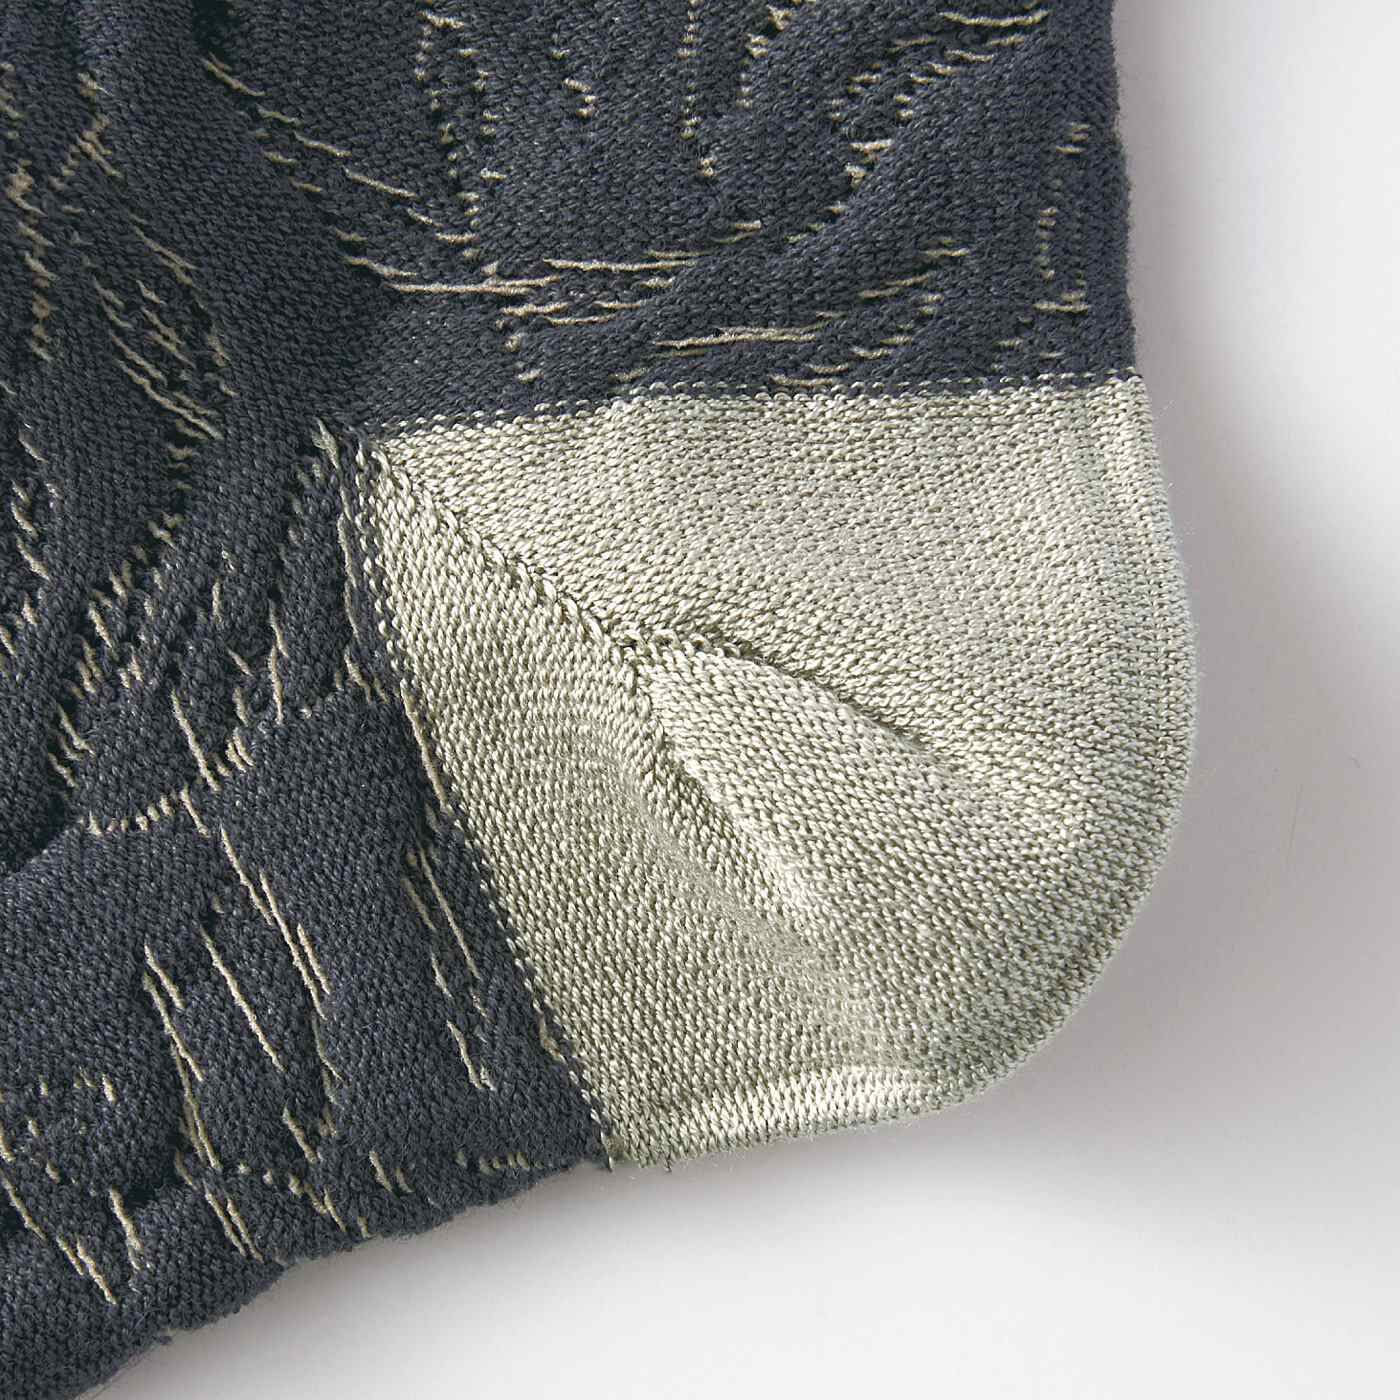 SAANA JA OLLI|サーナ ヤ オッリ　アートと編地の組み合わせを楽しむ　かかと肌側のみシルク遣いのコットン混靴下の会|かかと部分の肌側はシルク糸を使用。Ｙ字ヒール編みでフィット感がよくずれにくい。